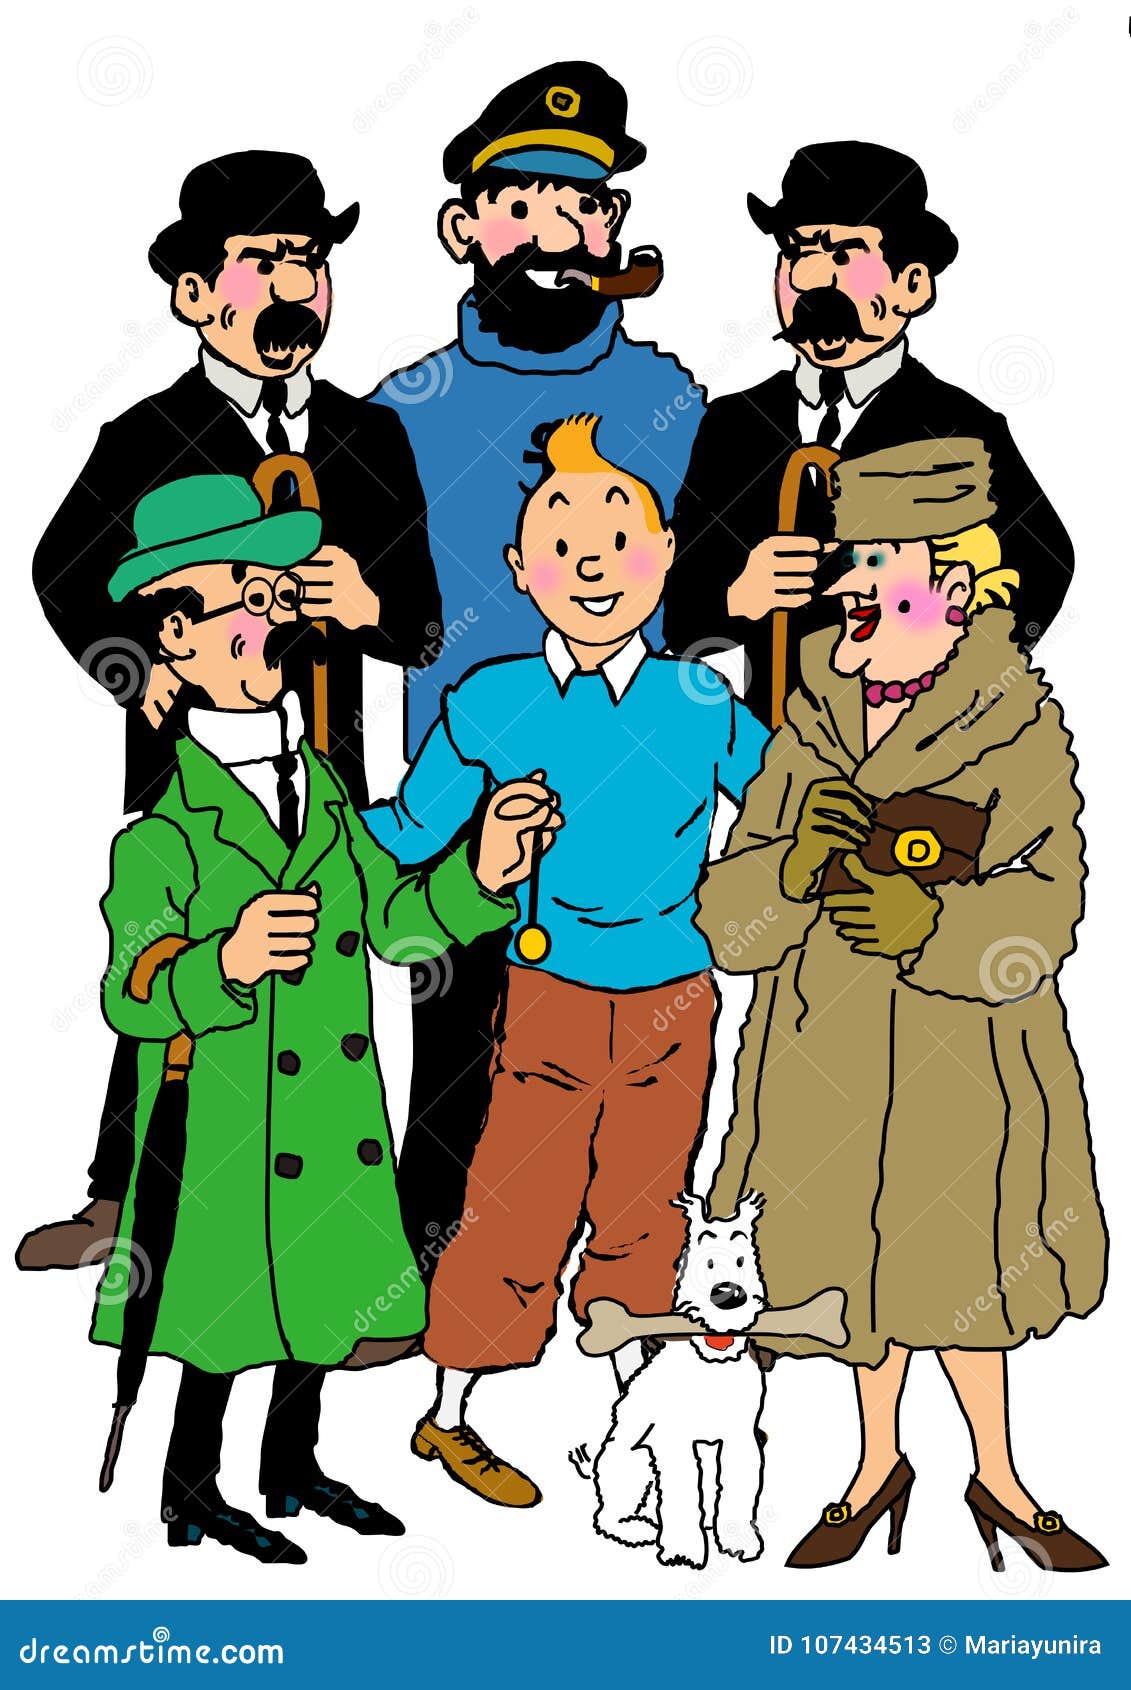 Tintin cartoon editorial stock photo. Illustration of tintin - 107434513